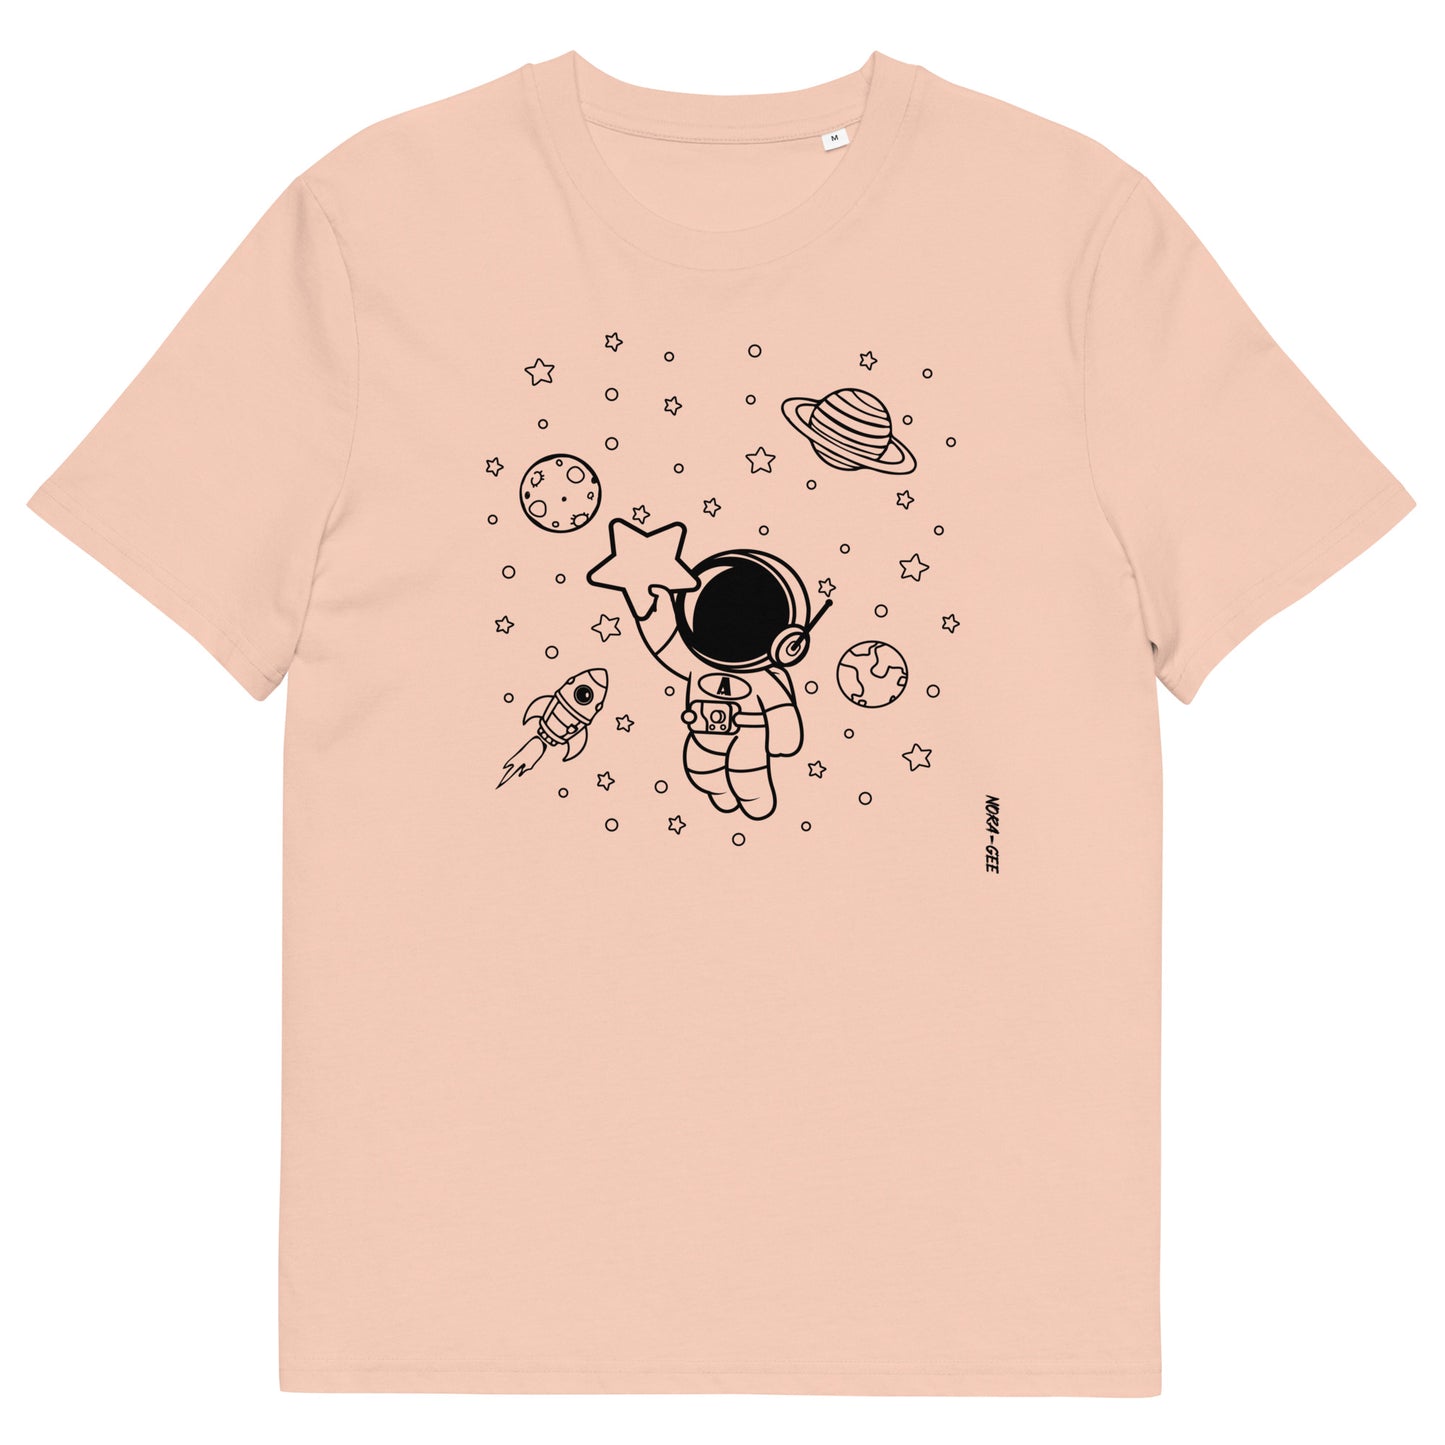 Unisex marškinėliai: Astronautas su žvaigžde